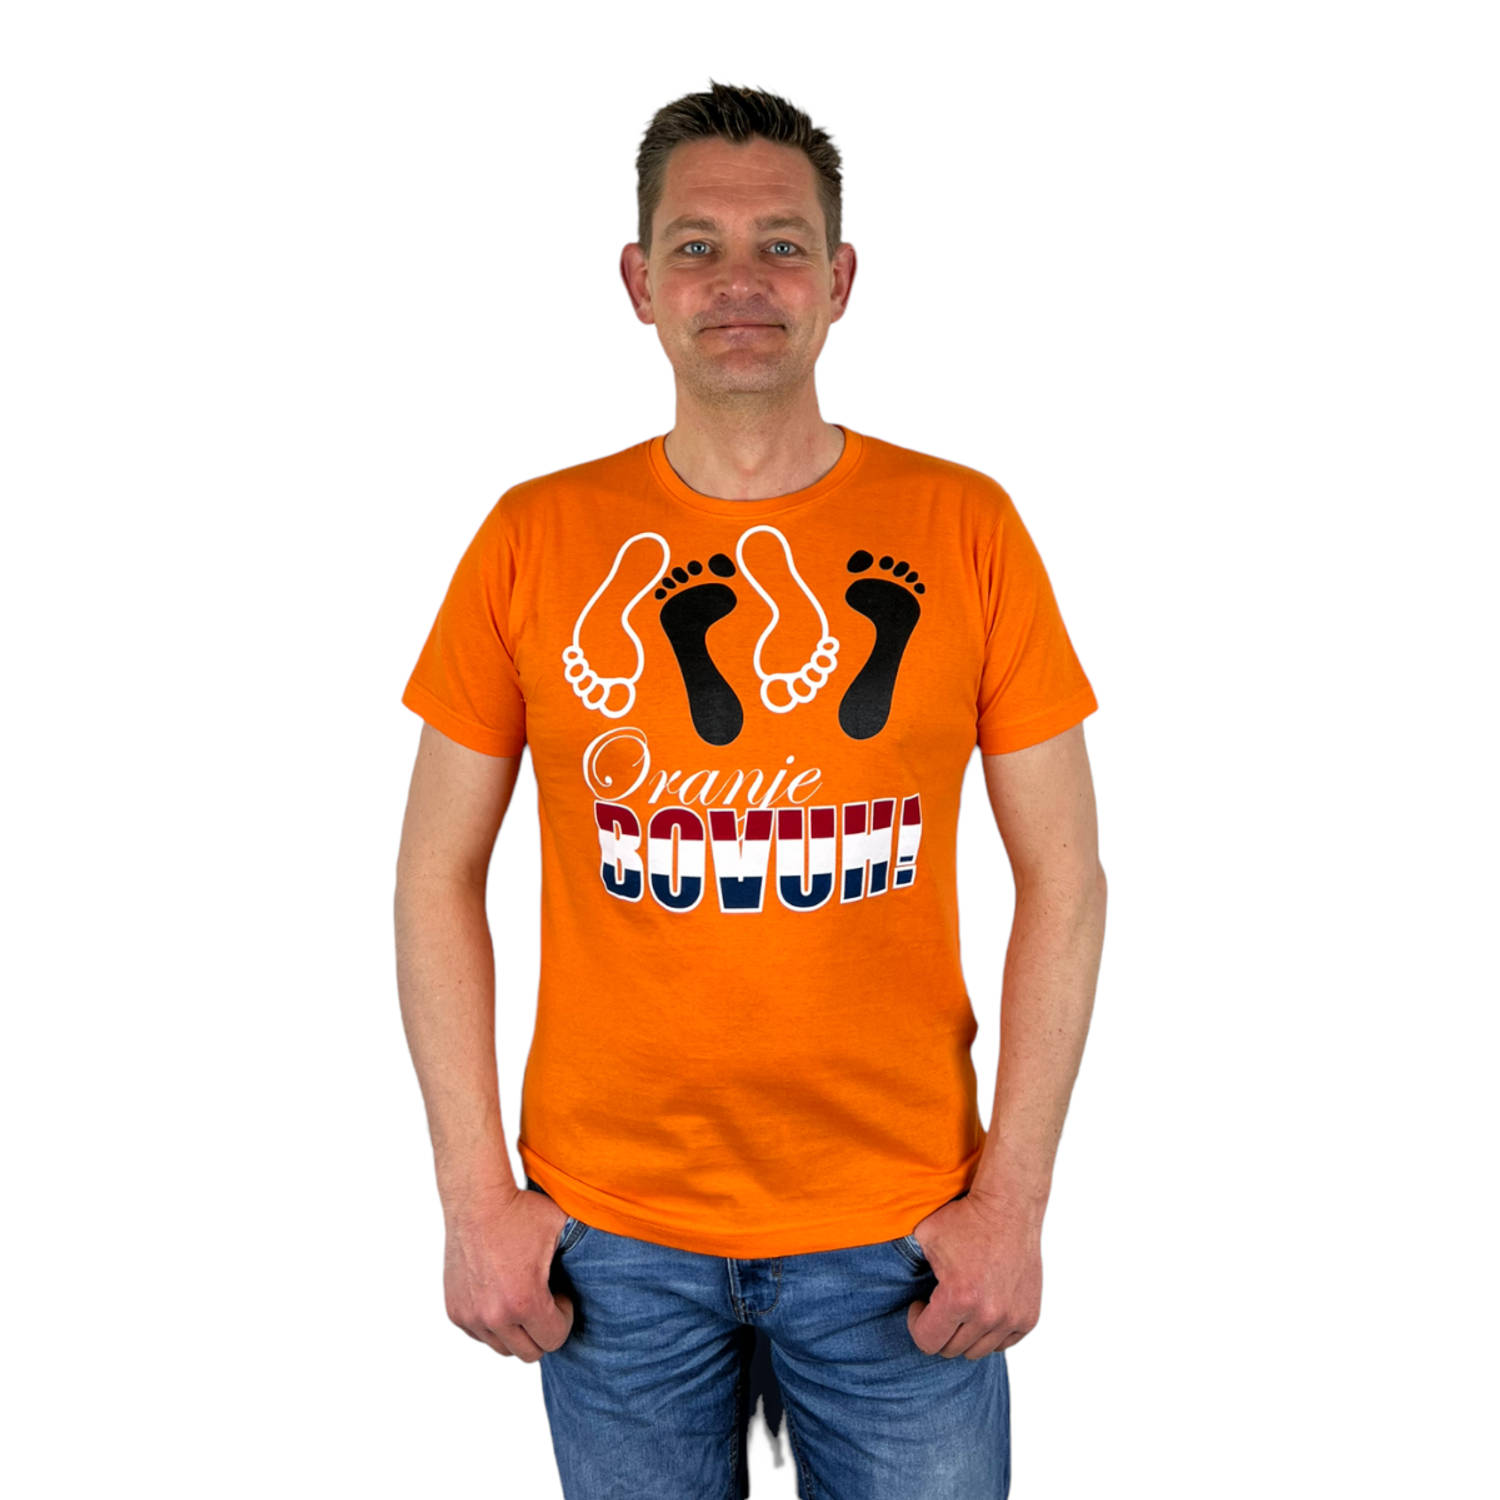 Oranje Heren T-Shirt - Oranje Bovuh! - Voor Koningsdag - Holland - Formule 1 - EK/WK Voetbal - Maat L